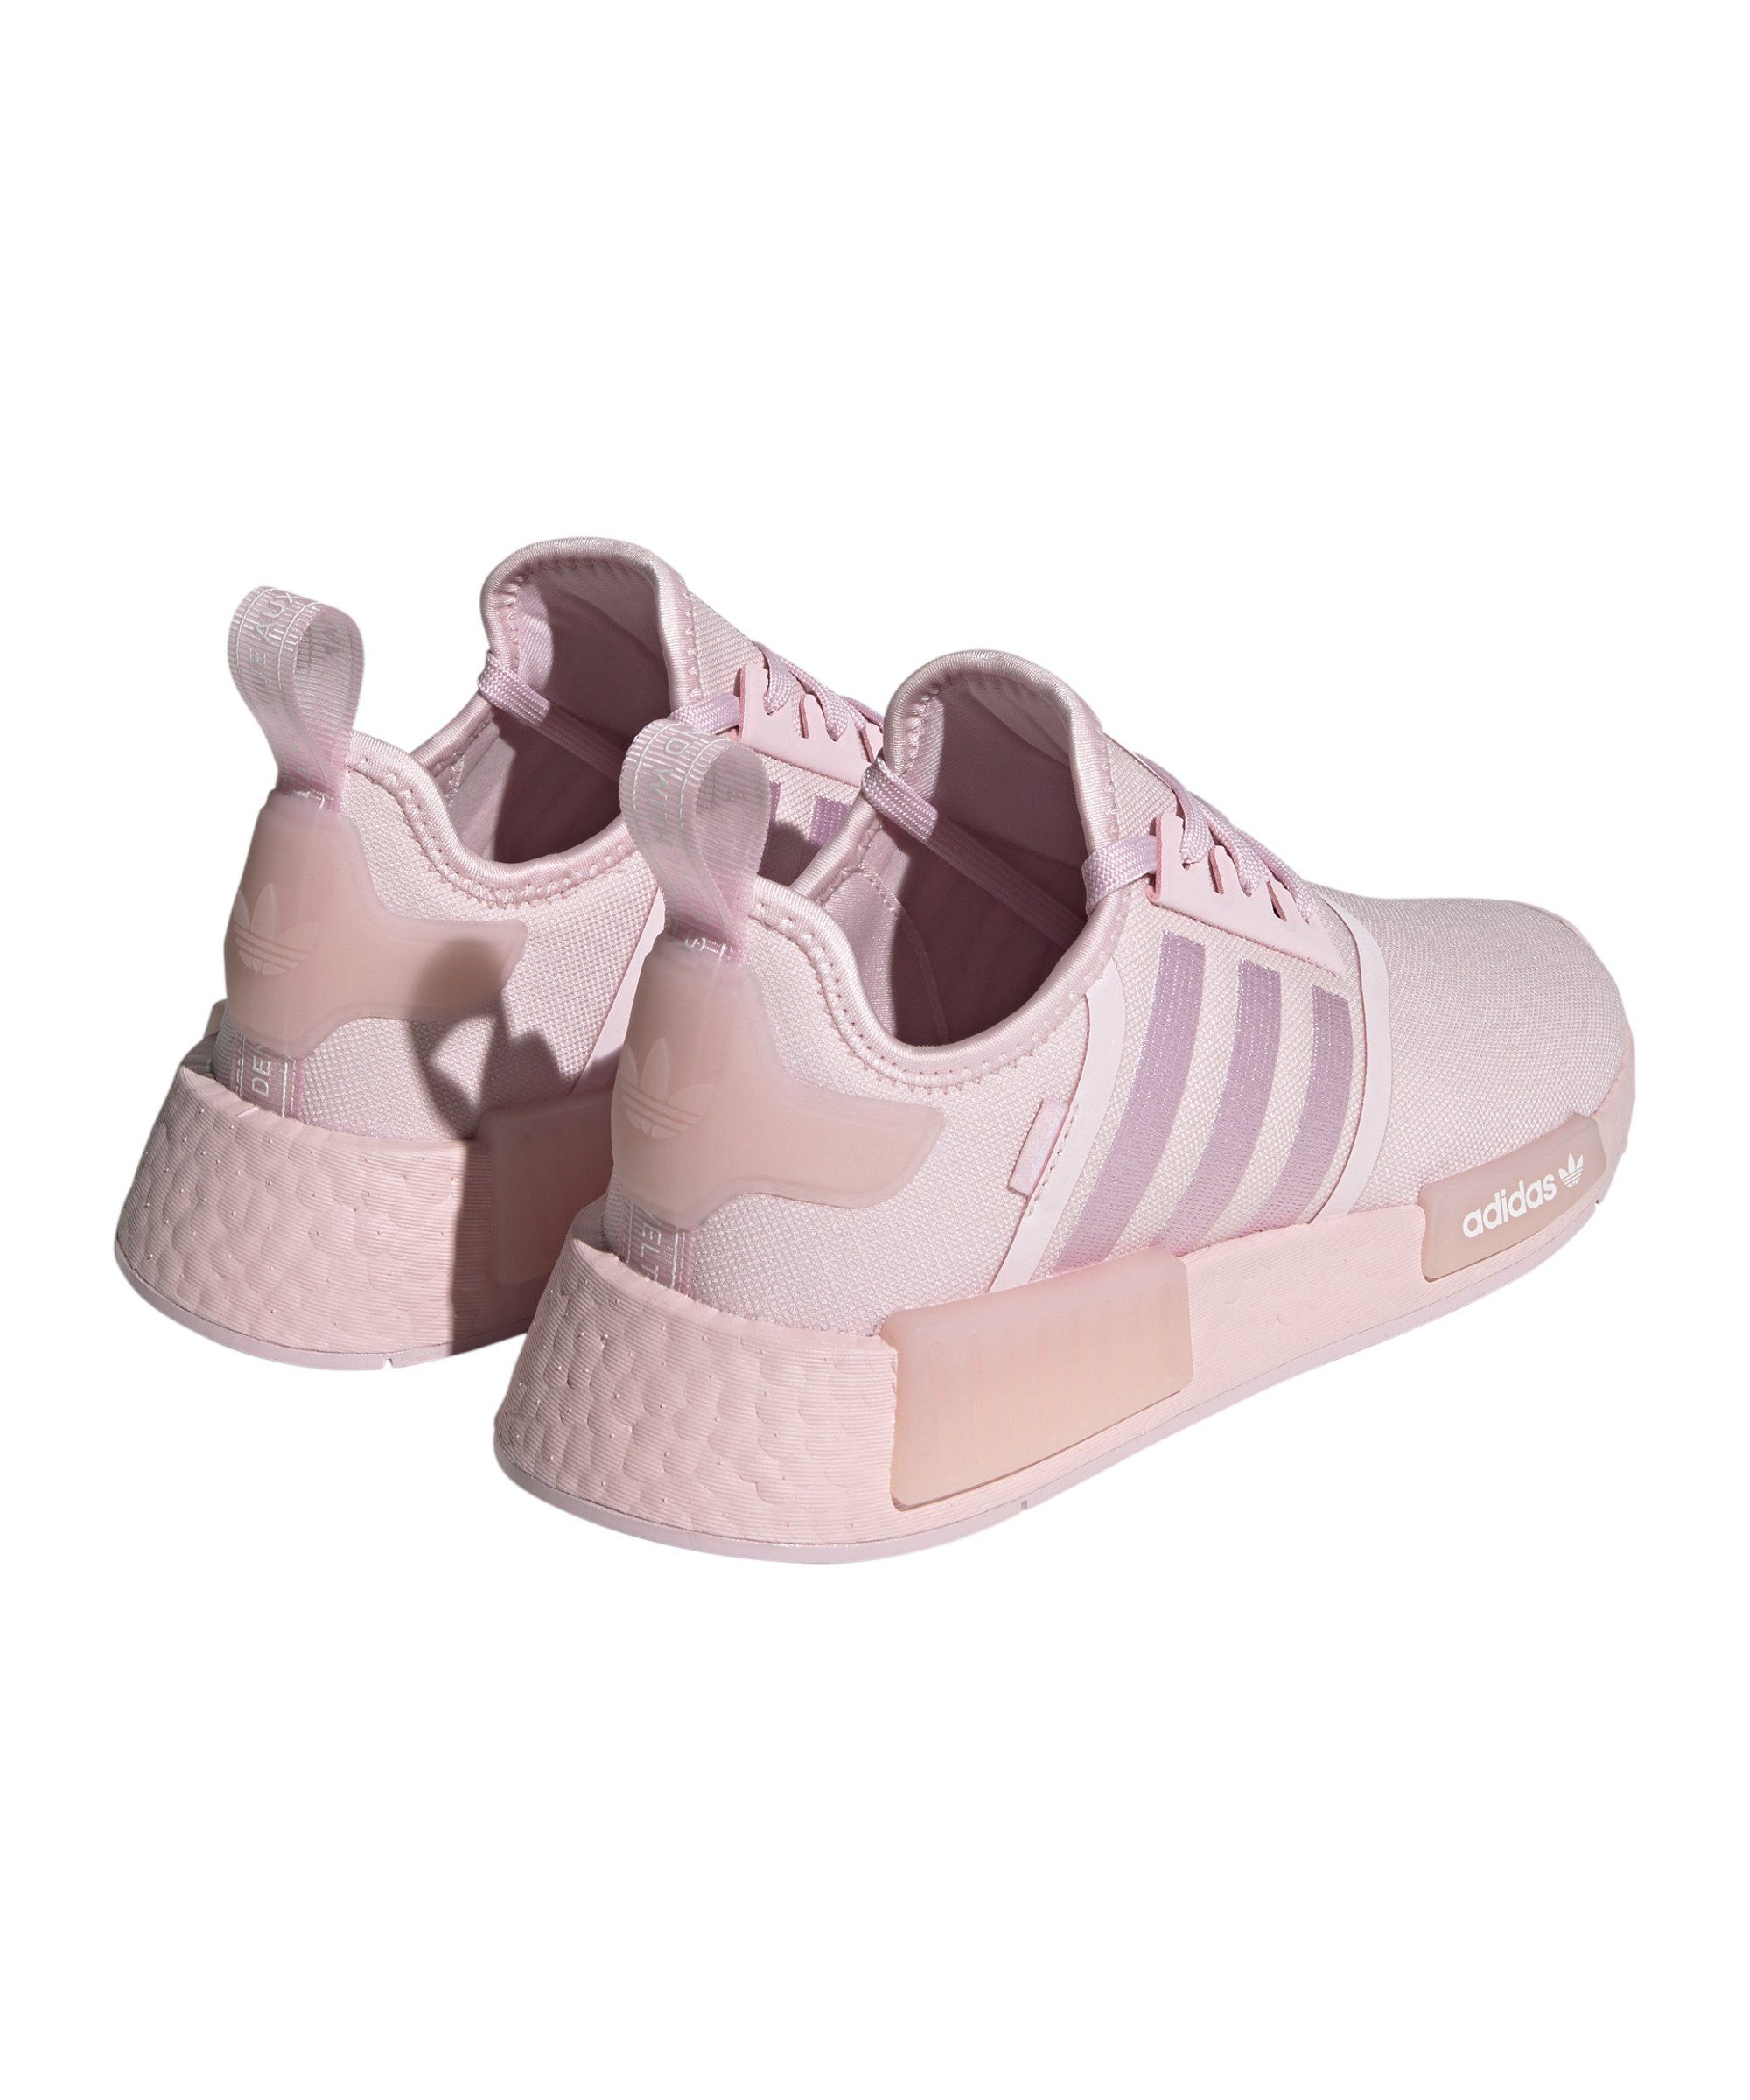 NMD_R1 Damen Sneaker adidas pinkweiss Originals